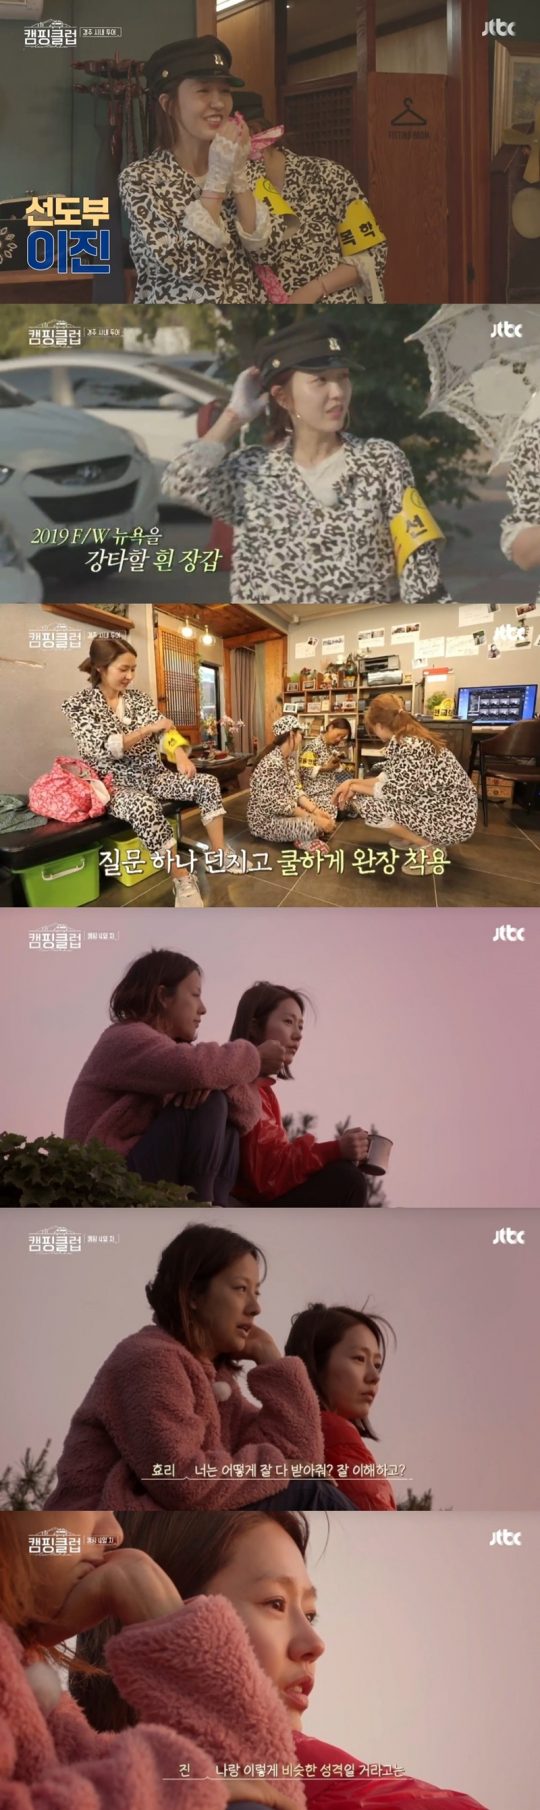 ‘캠핑클럽’ 방송 화면./사진제공=JTBC